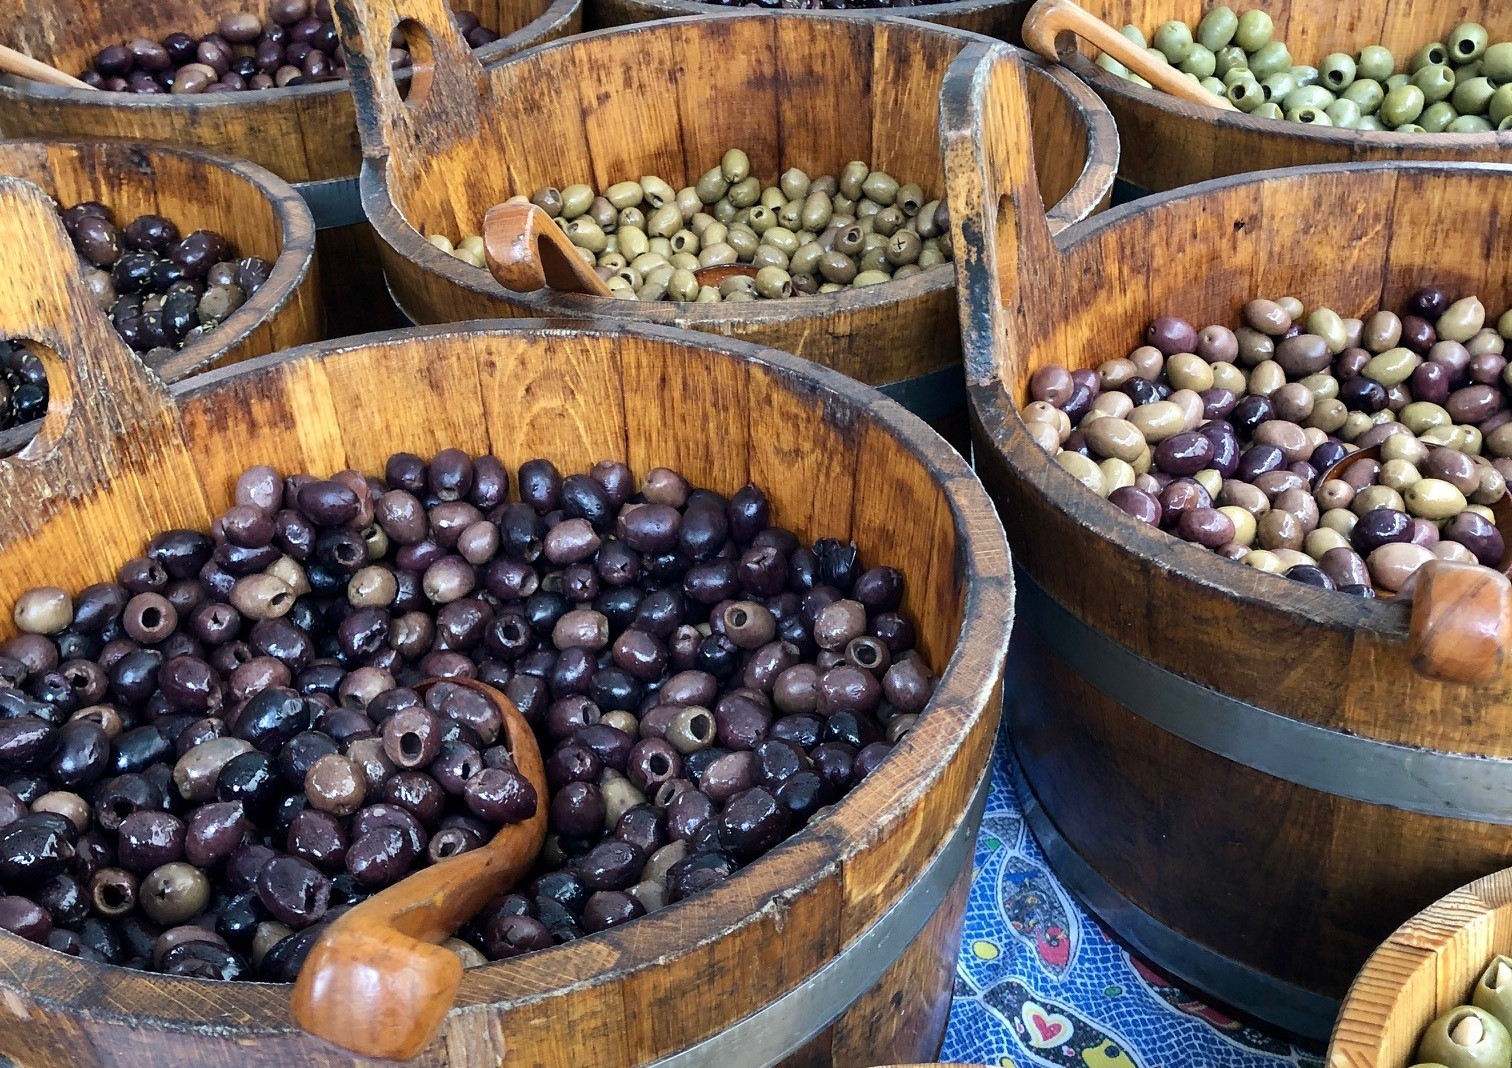 Oliven in Holzbottichen von Morla, einer Biomanufaktur in Portugal am Markt in Klagenfurt